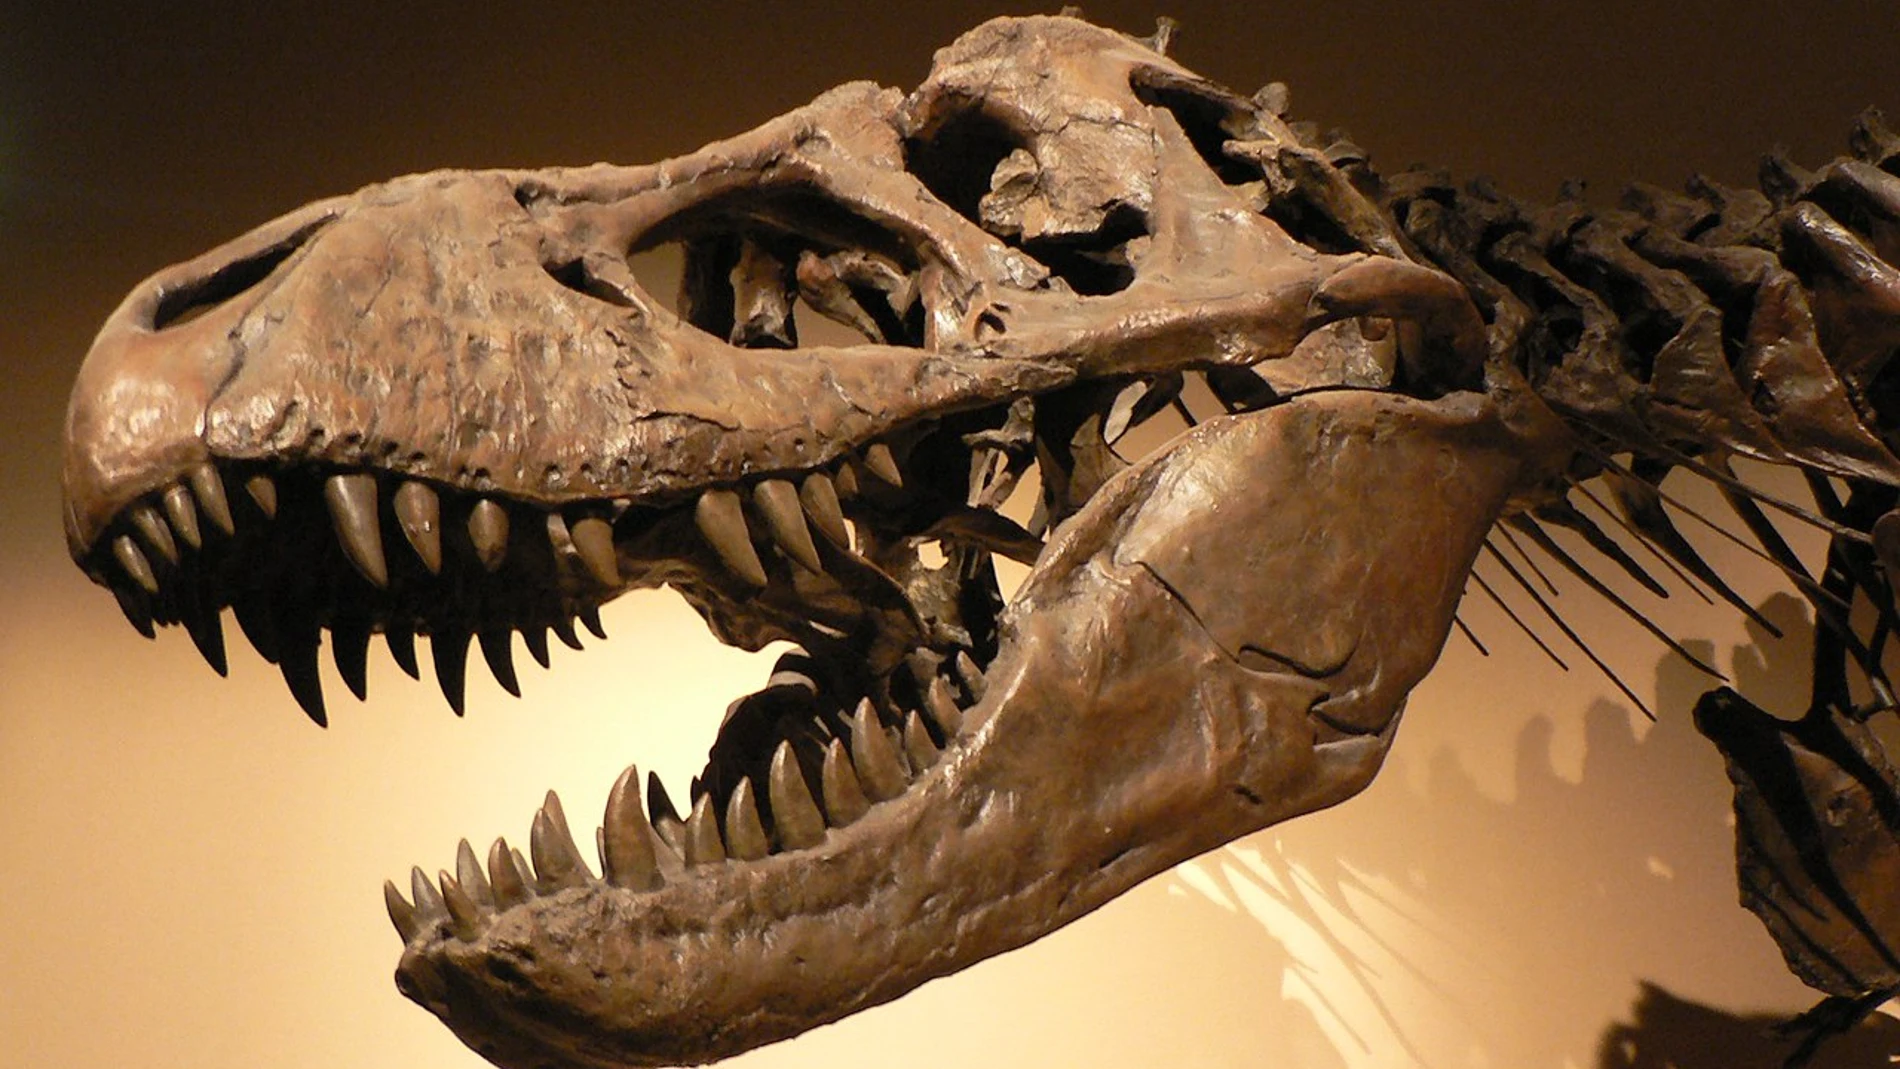 Los dinosaurios desaparecieron hace 66 millones de años. El mundo se recuperó, pero durante diez millones de años la mayoría de los ecosistemas fueron poco diversos y sus habitantes eran de pequeño tamaño, los descendientes directos de los supervivientes de la catástrofe. Sólo después de ese tiempo, con la llegada del Máximo Térmico del límite Paleoceno-Eoceno, algunos grupos lograron romper el bloqueo y diversificarse.